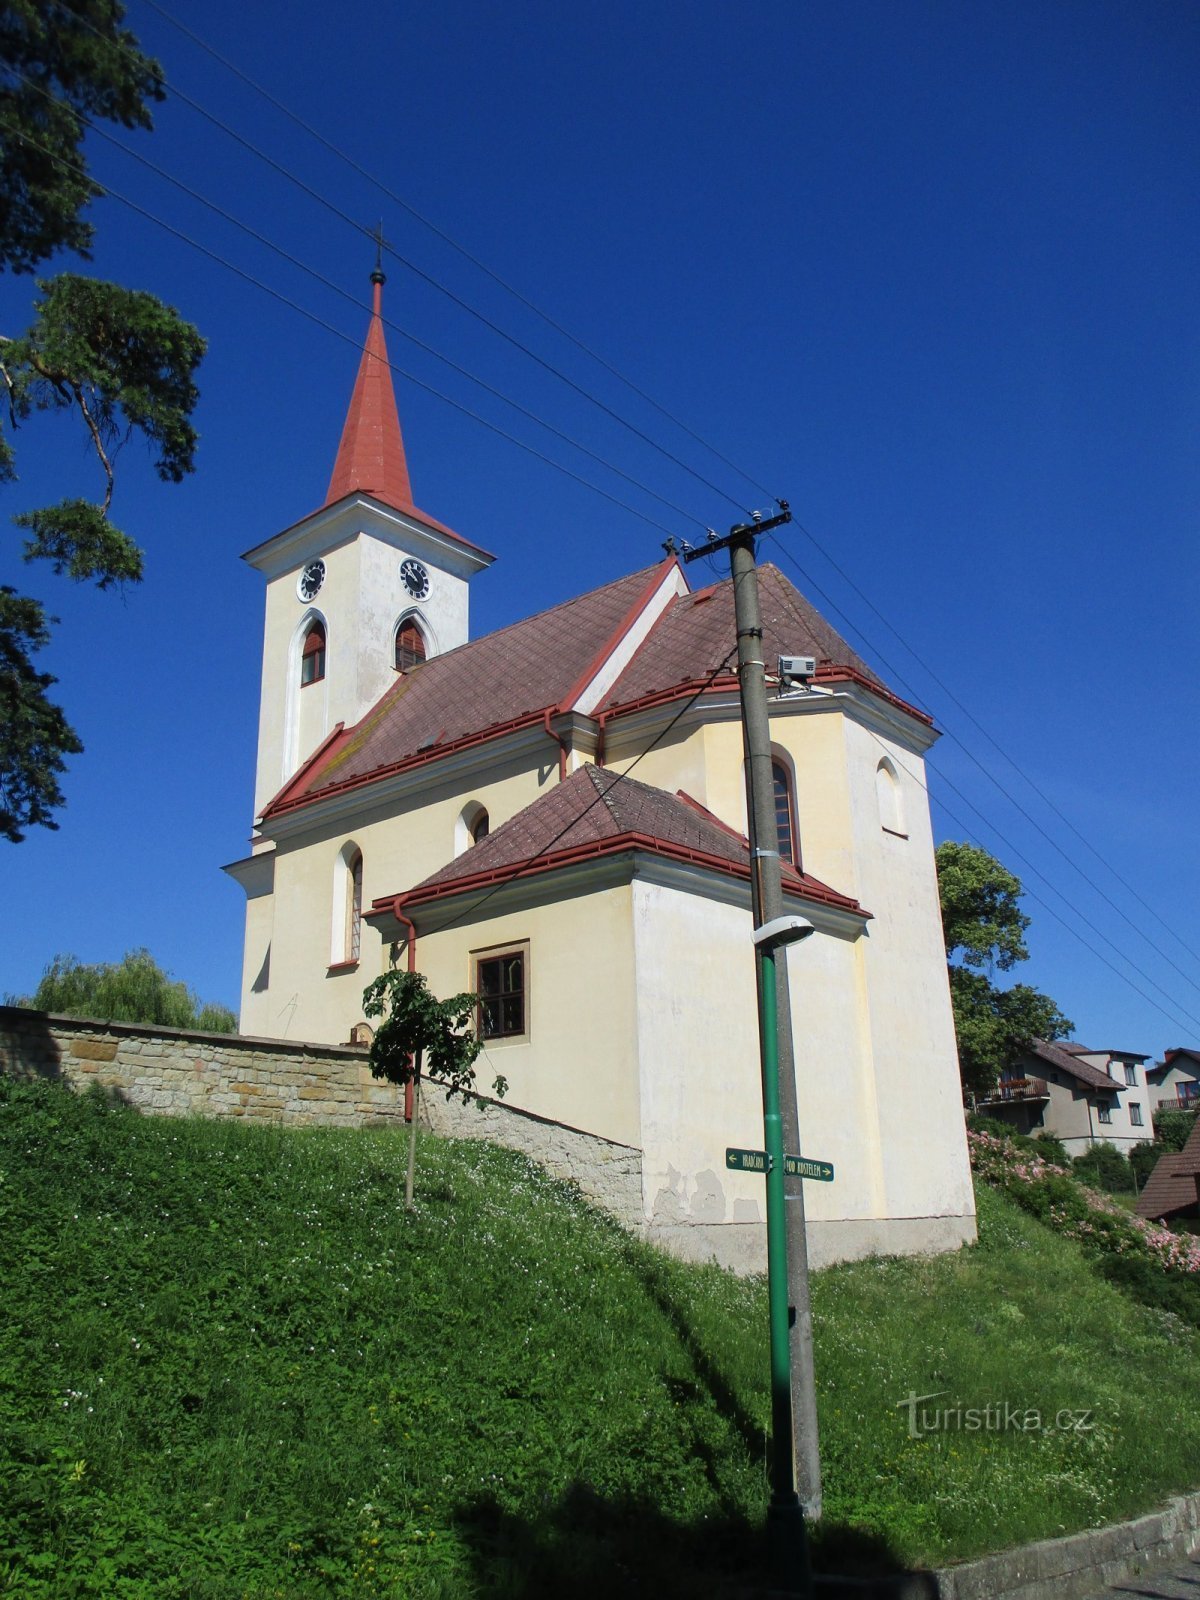 Förvandlingens kyrka (Velichovky)